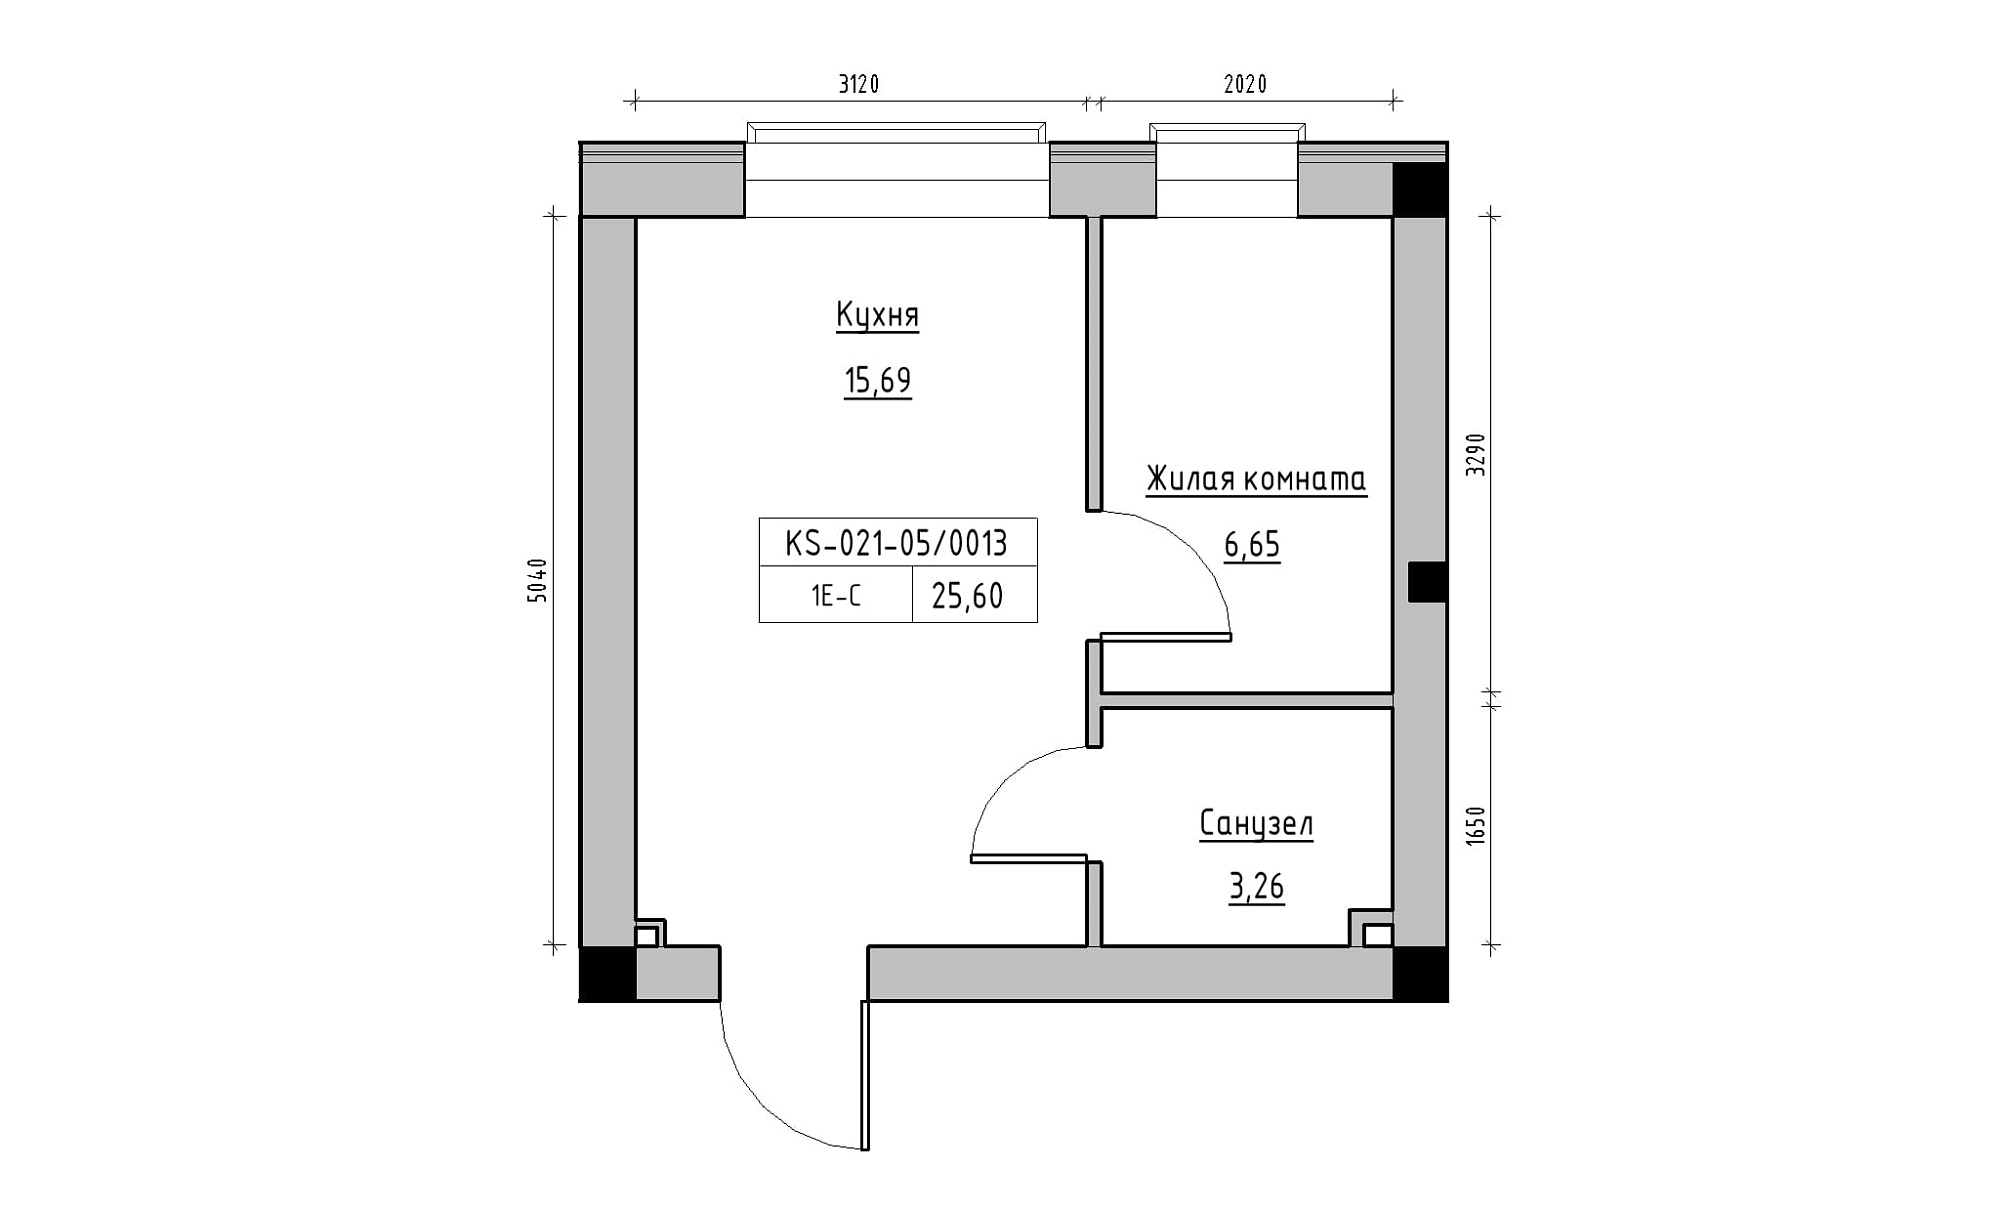 Планировка 1-к квартира площей 25.6м2, KS-021-05/0013.